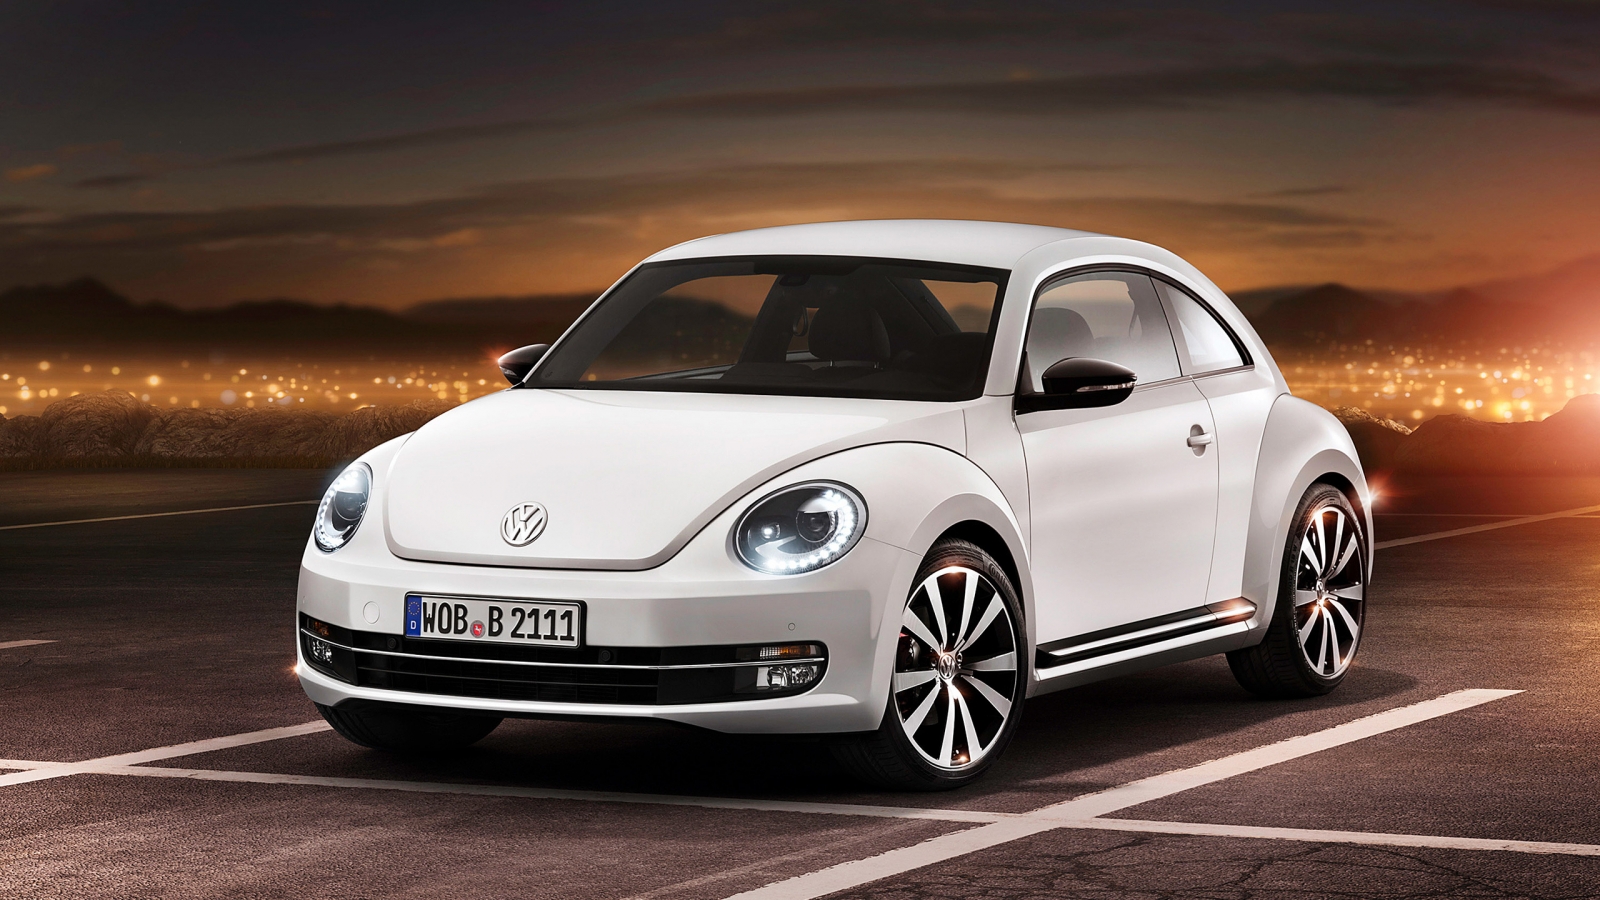 2012 Volkswagen Beetle for 1600 x 900 HDTV resolution